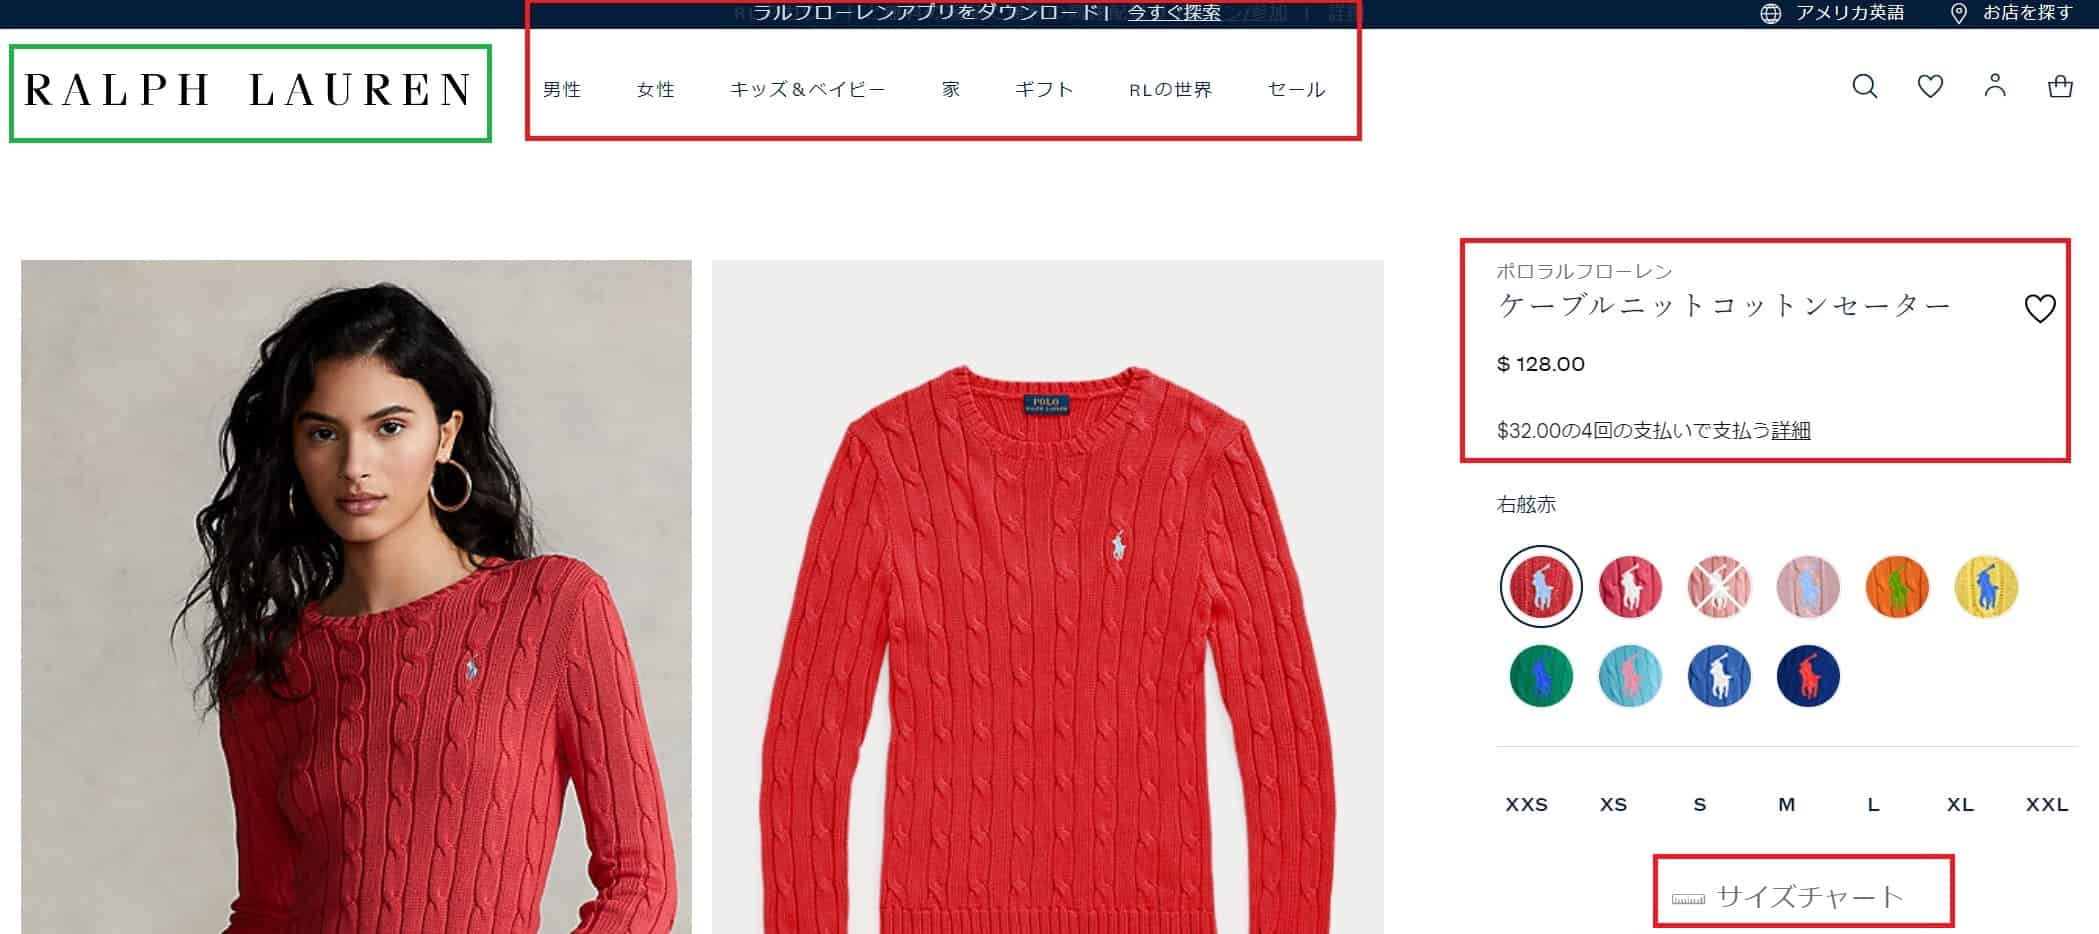 ラルフローレンのアメリカオンライン店舗のページを日本語に変更